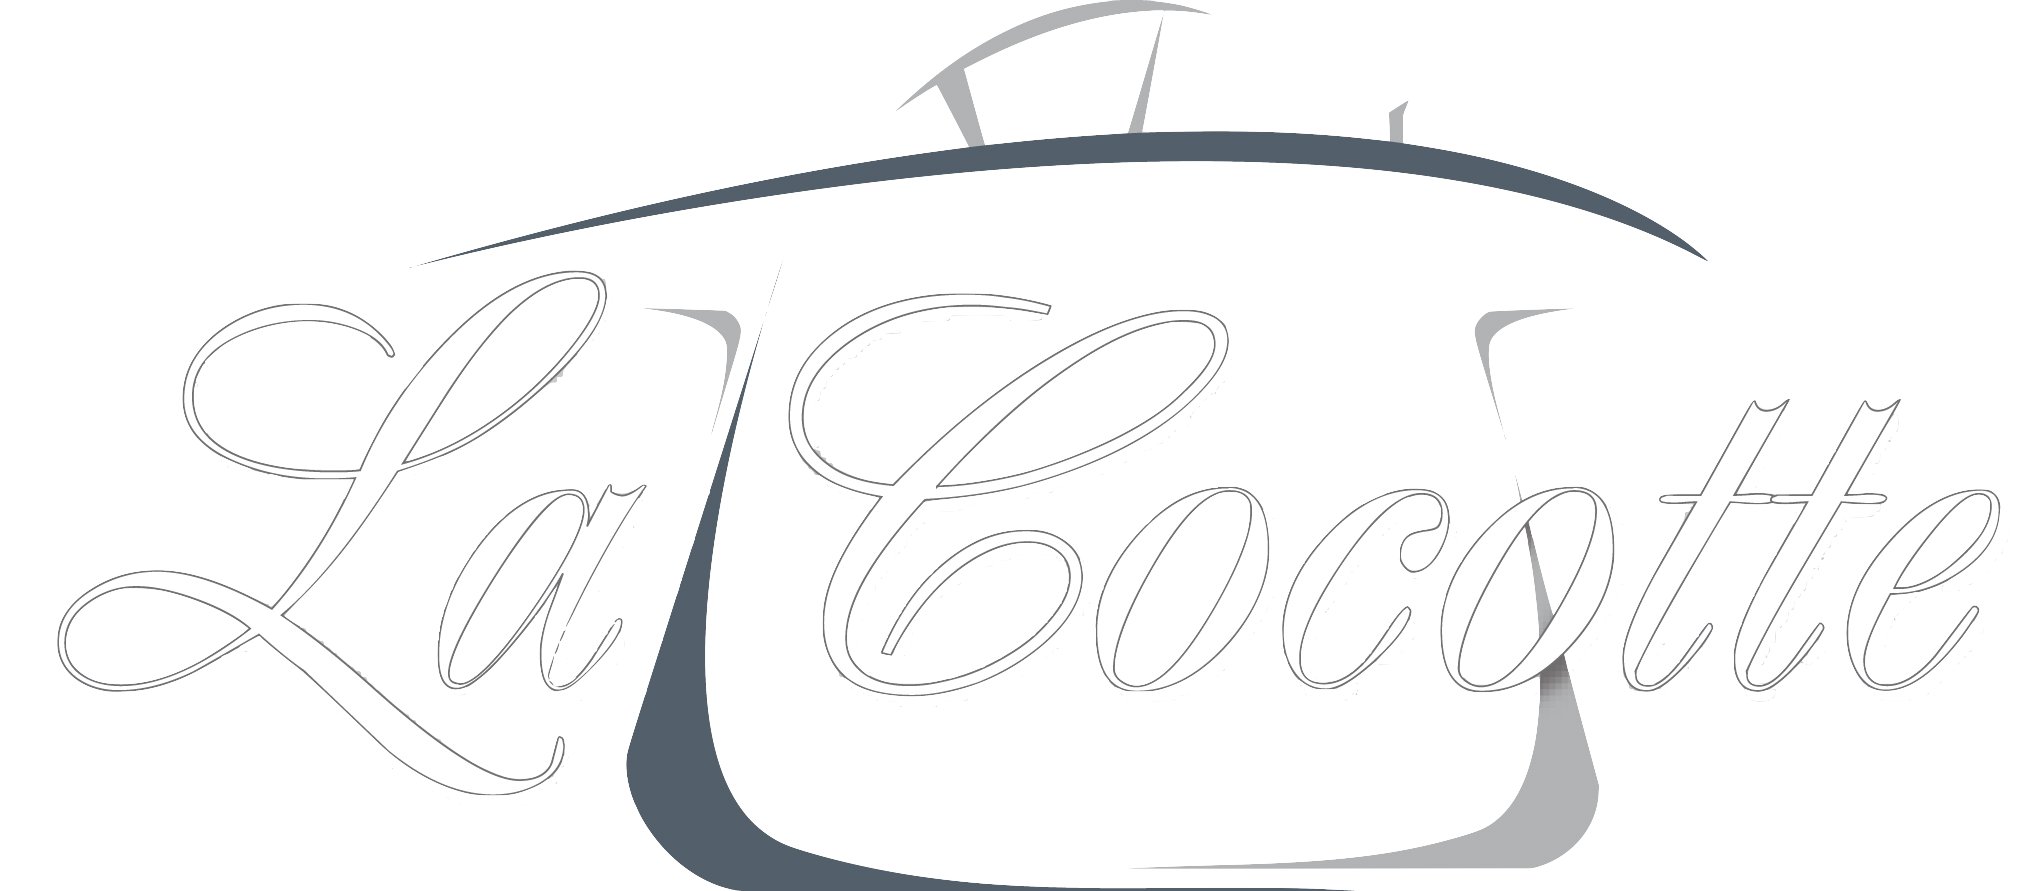 Logo La Cocotte